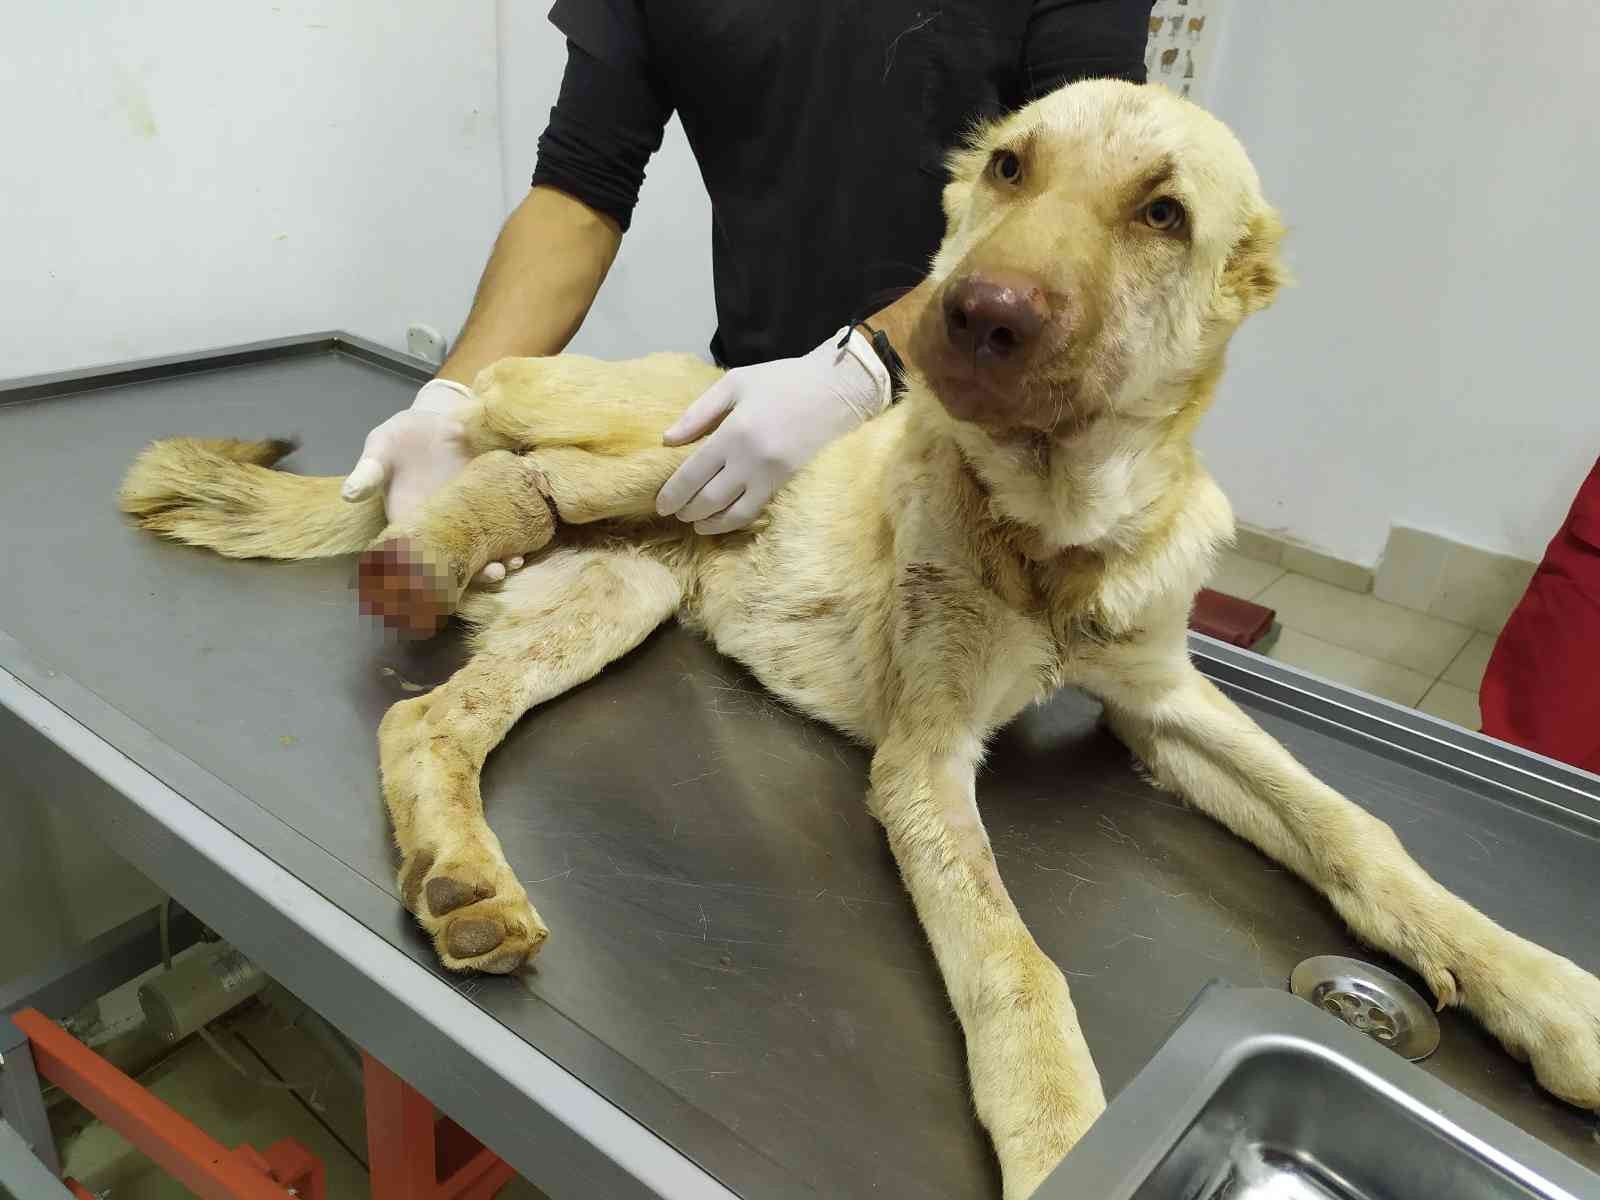 Gaziantep’te 6 aylık köpeğe yapılan işkence pes dedirtti #gaziantep